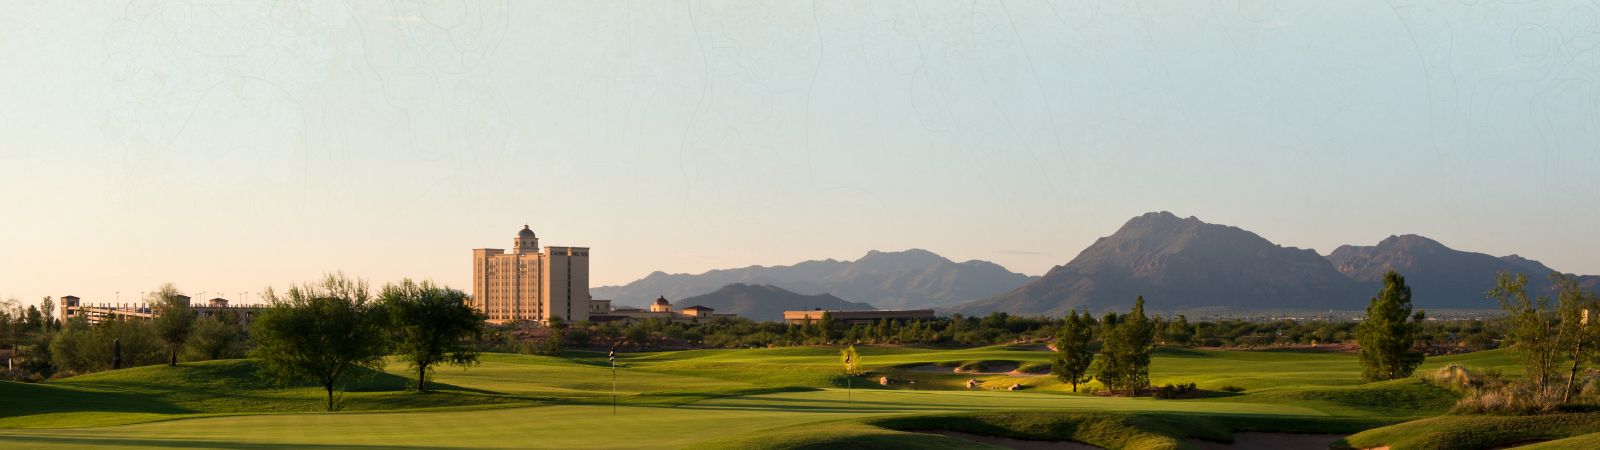 Sewailo Golf Club Tucson Az Casino Del Sol 